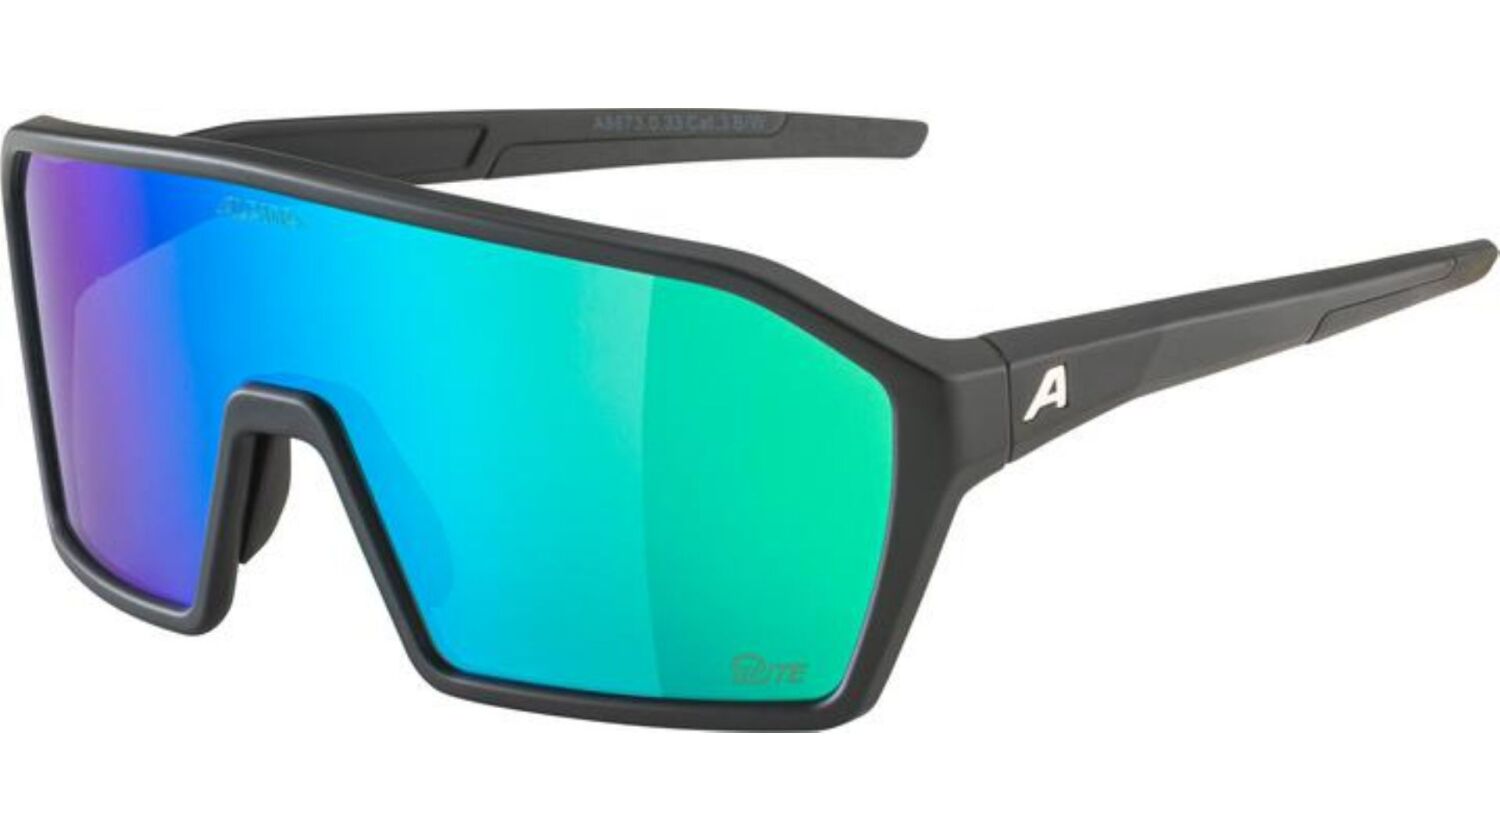 Alpina Ram Q-Lite Sportbrille black matt/mirror green one size